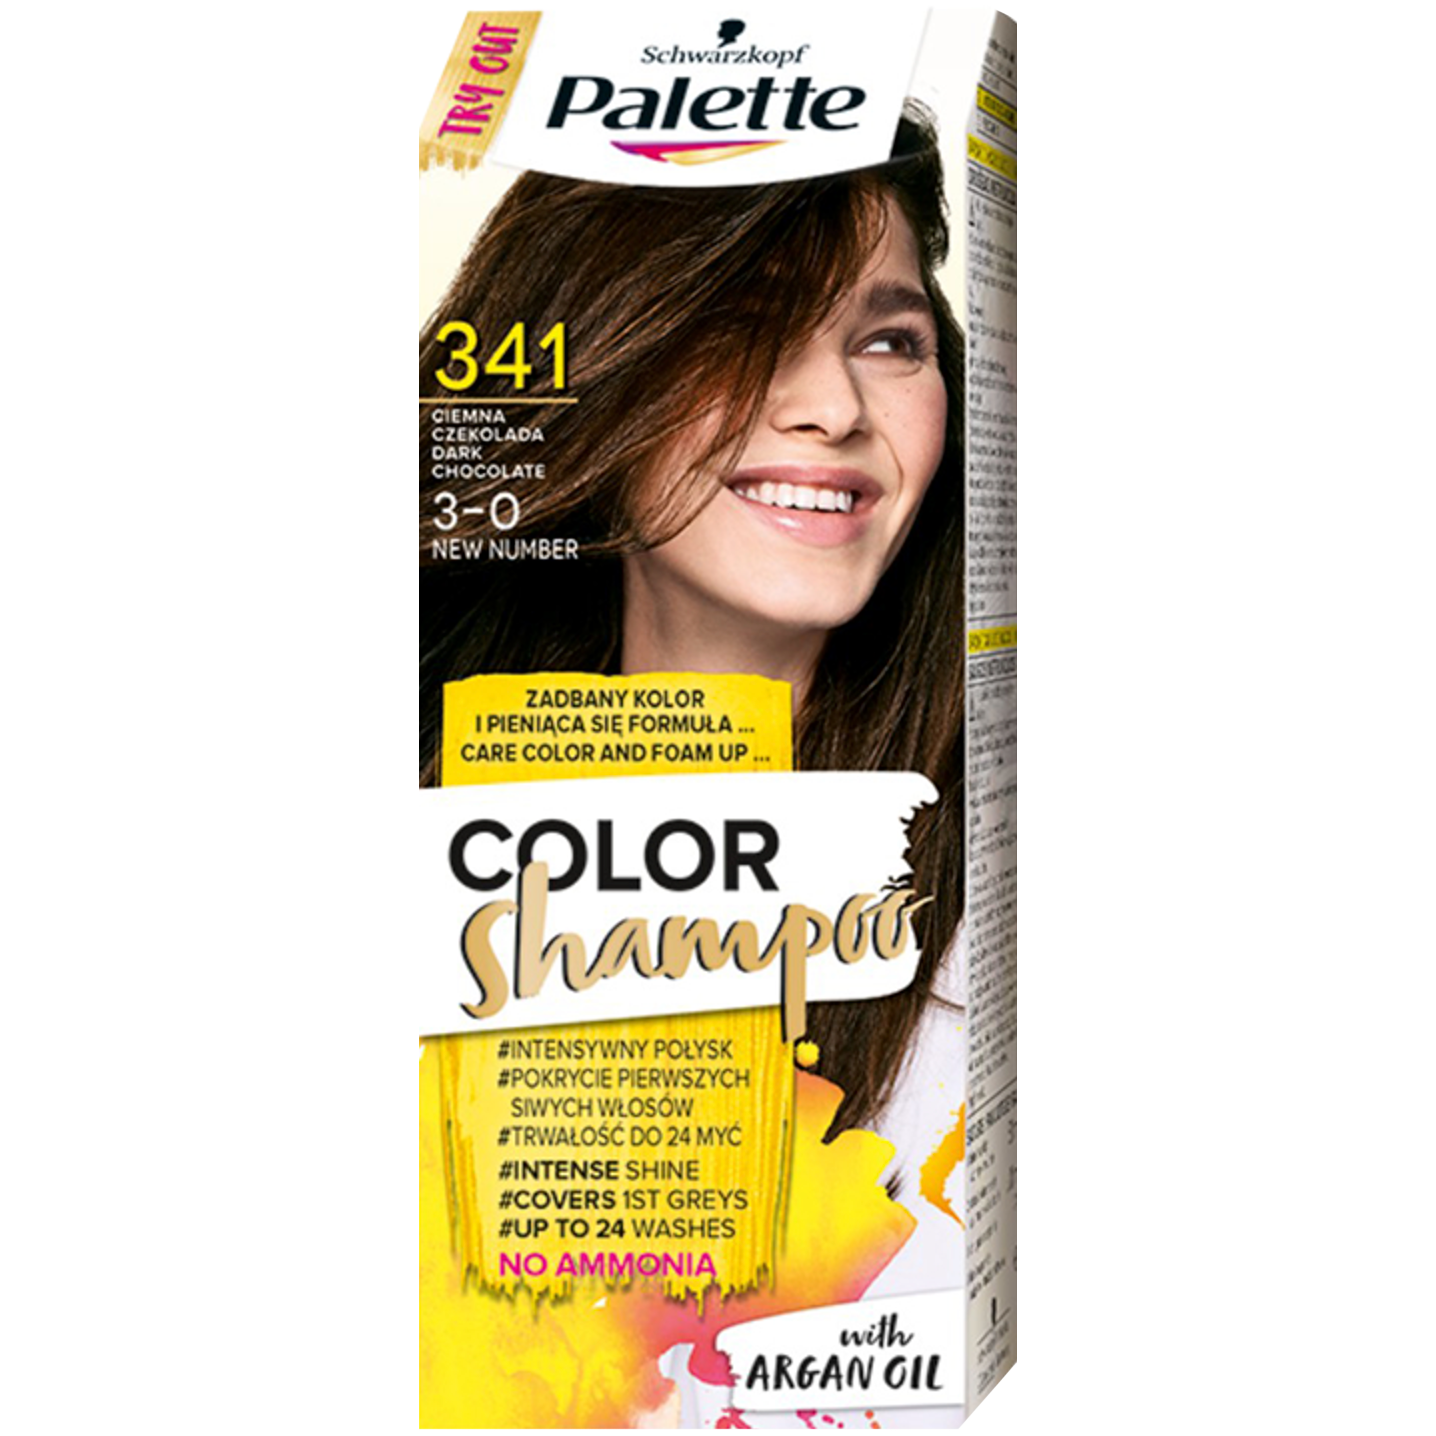 palette szampon koloryzujący ciemna czekolada